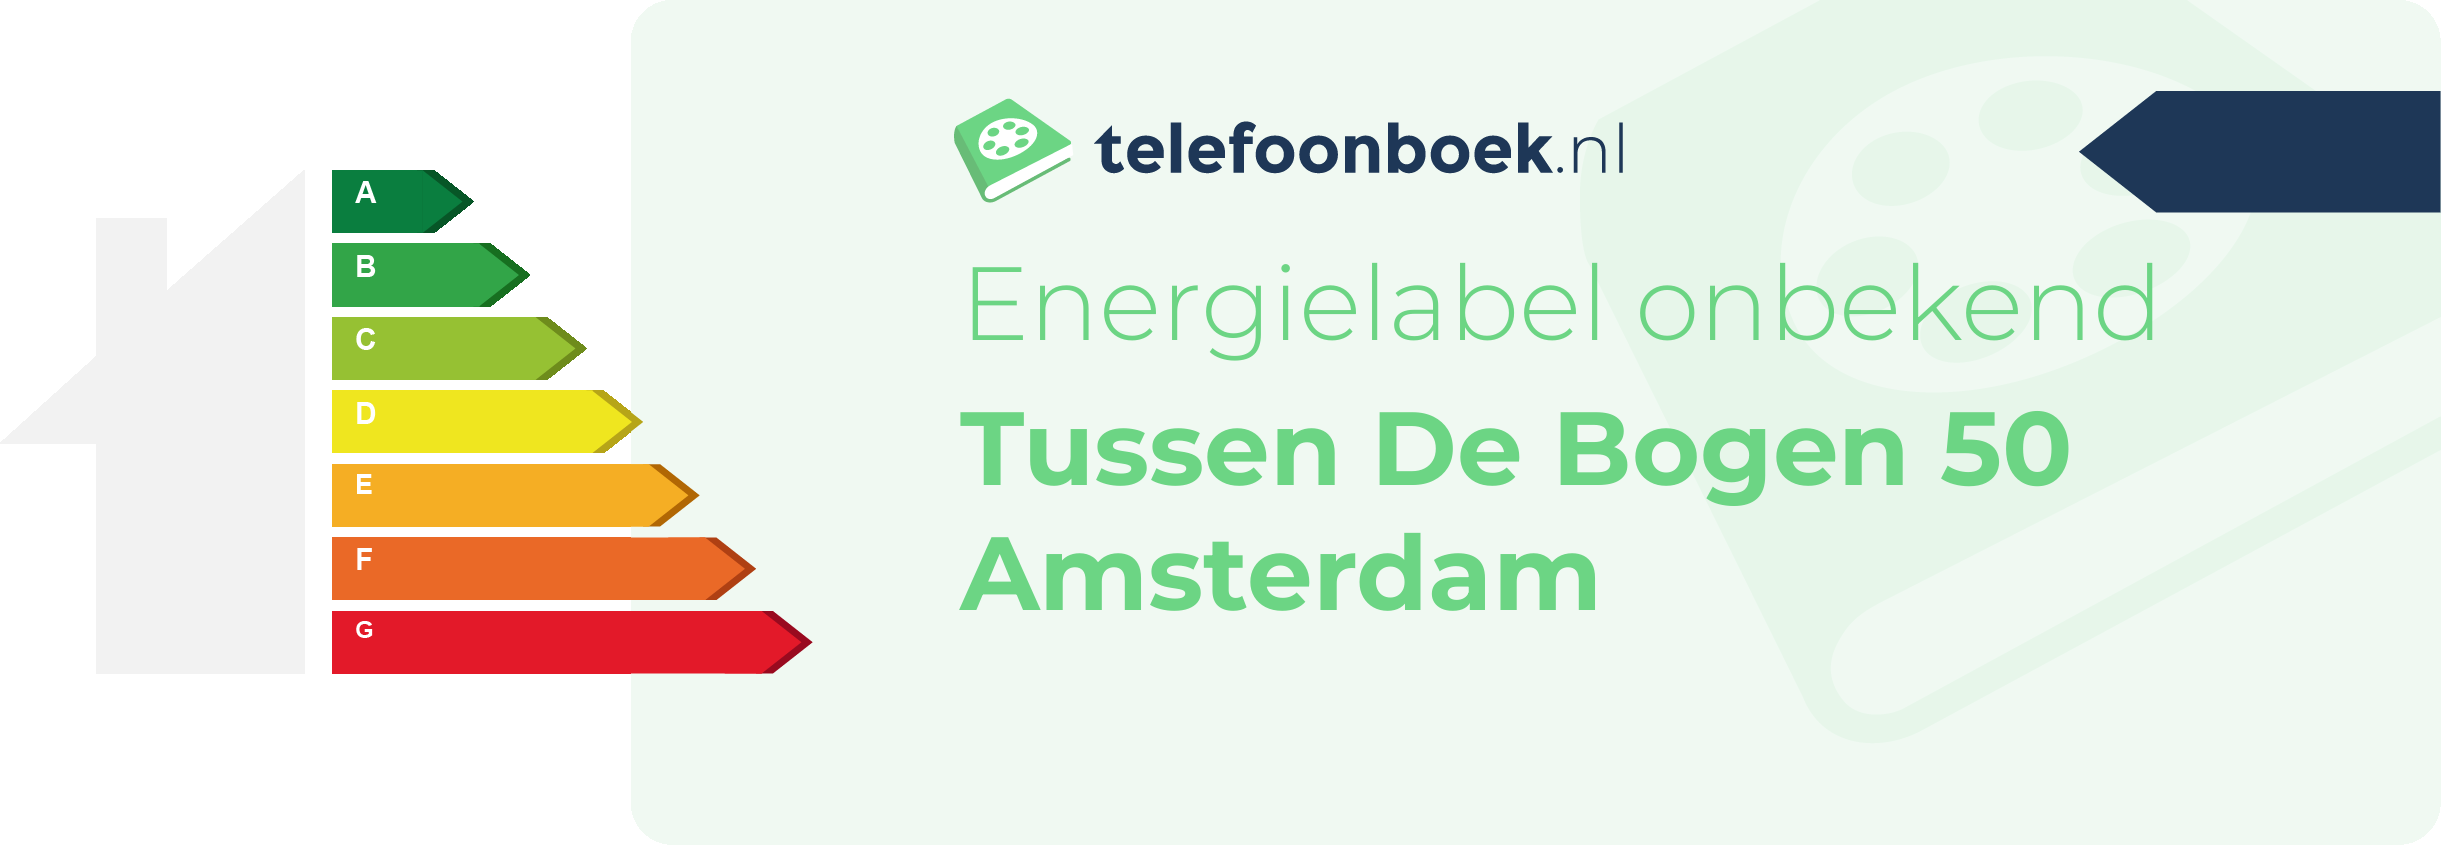 Energielabel Tussen De Bogen 50 Amsterdam